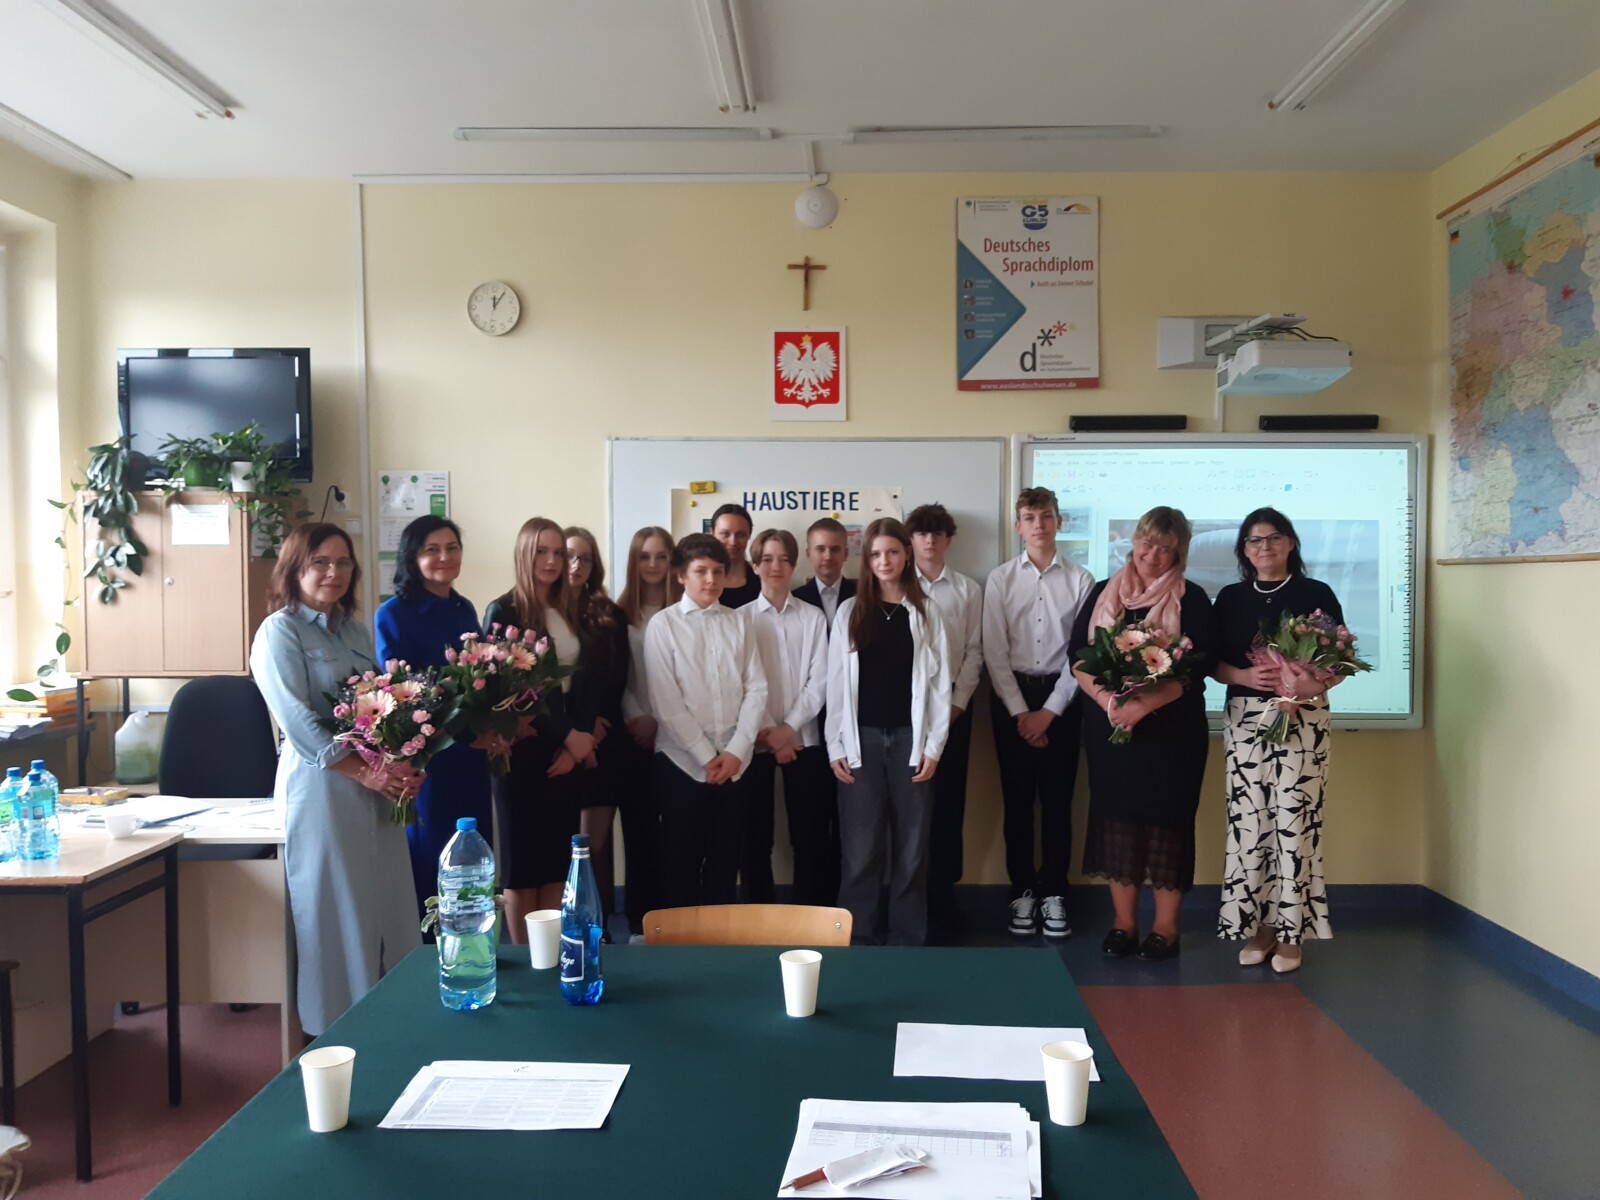 Grupowe zdjęcie uczniów wraz z egzaminatorami i panią dyrektor po ogłoszeniu wyników z egzaminu ustnego DSD1.